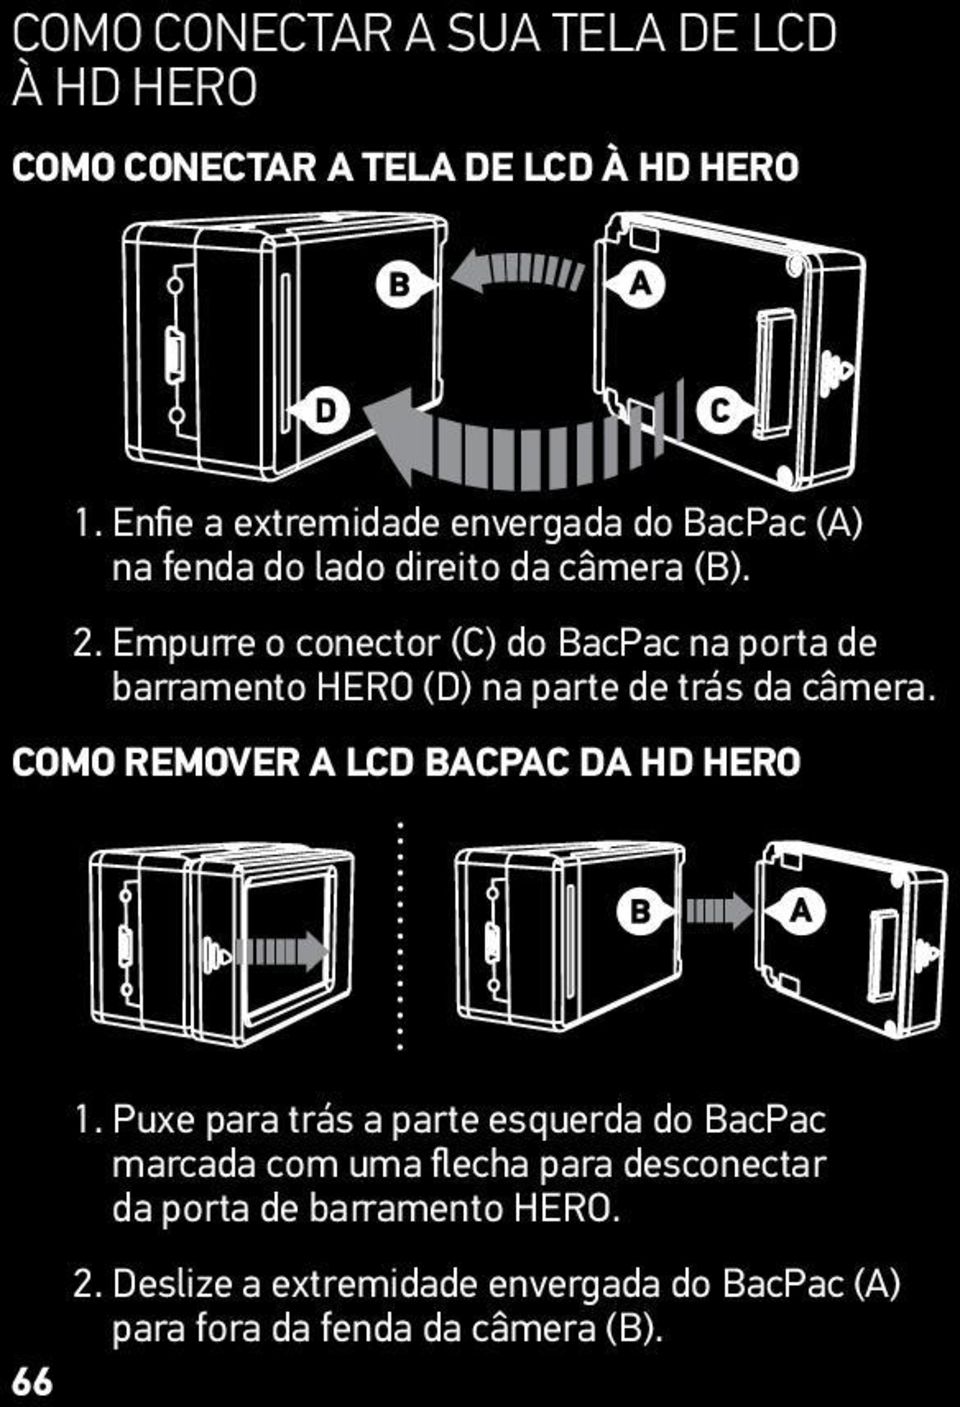 Empurre o conector (C) do BacPac na porta de barramento HERO (D) na parte de trás da câmera.